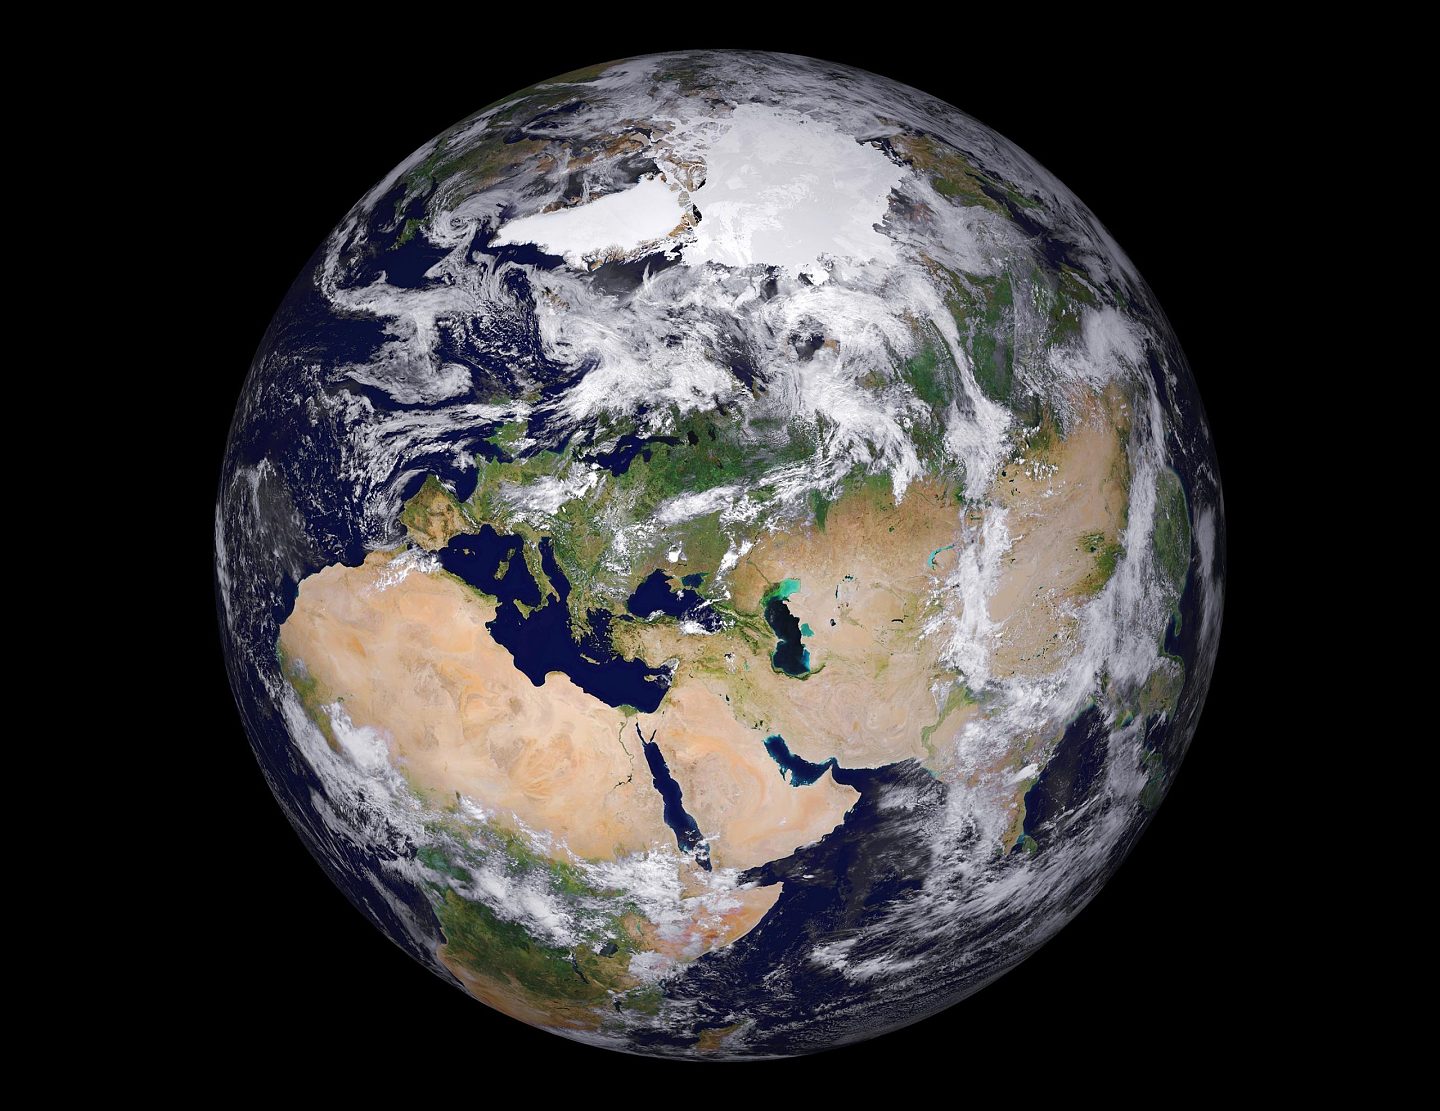 欧空局和美国航天局签署意向声明 联手应对气候变化的全球挑战 - 1